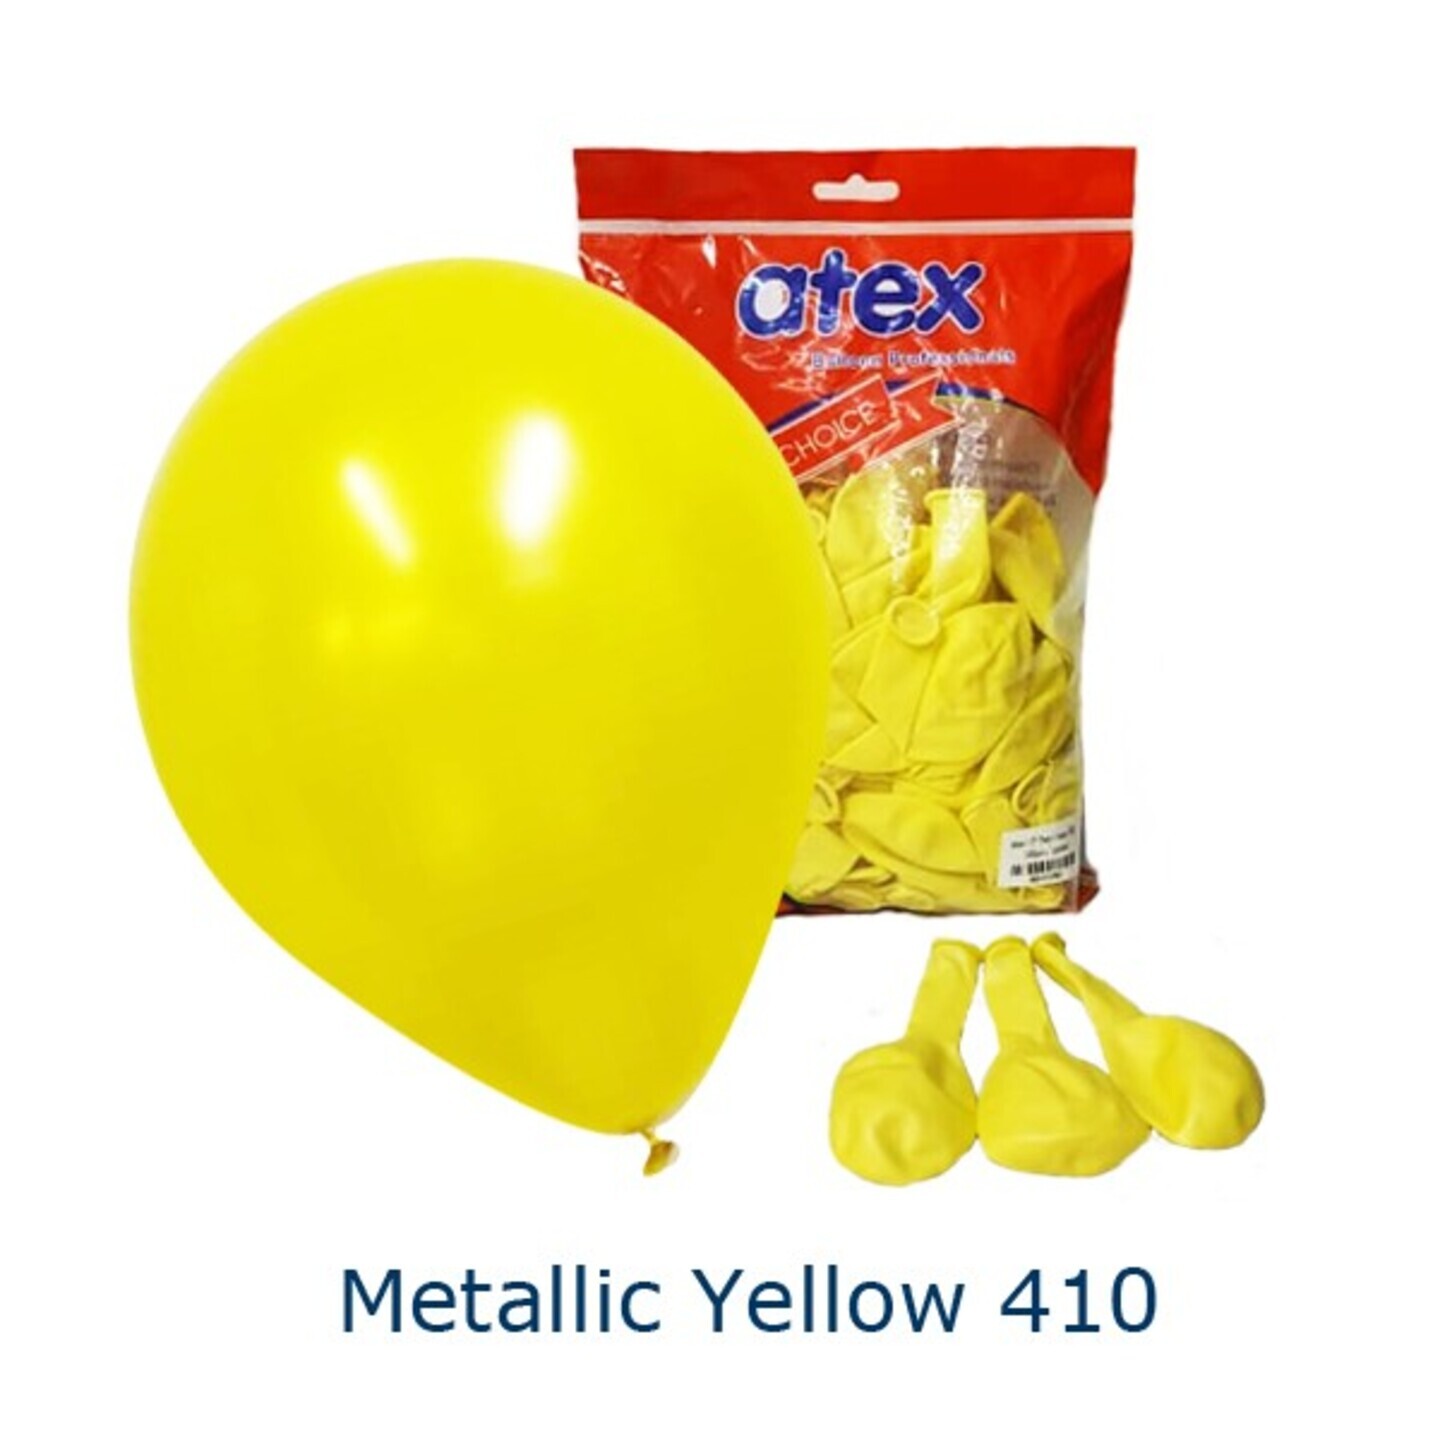 Metallic Yellow 410